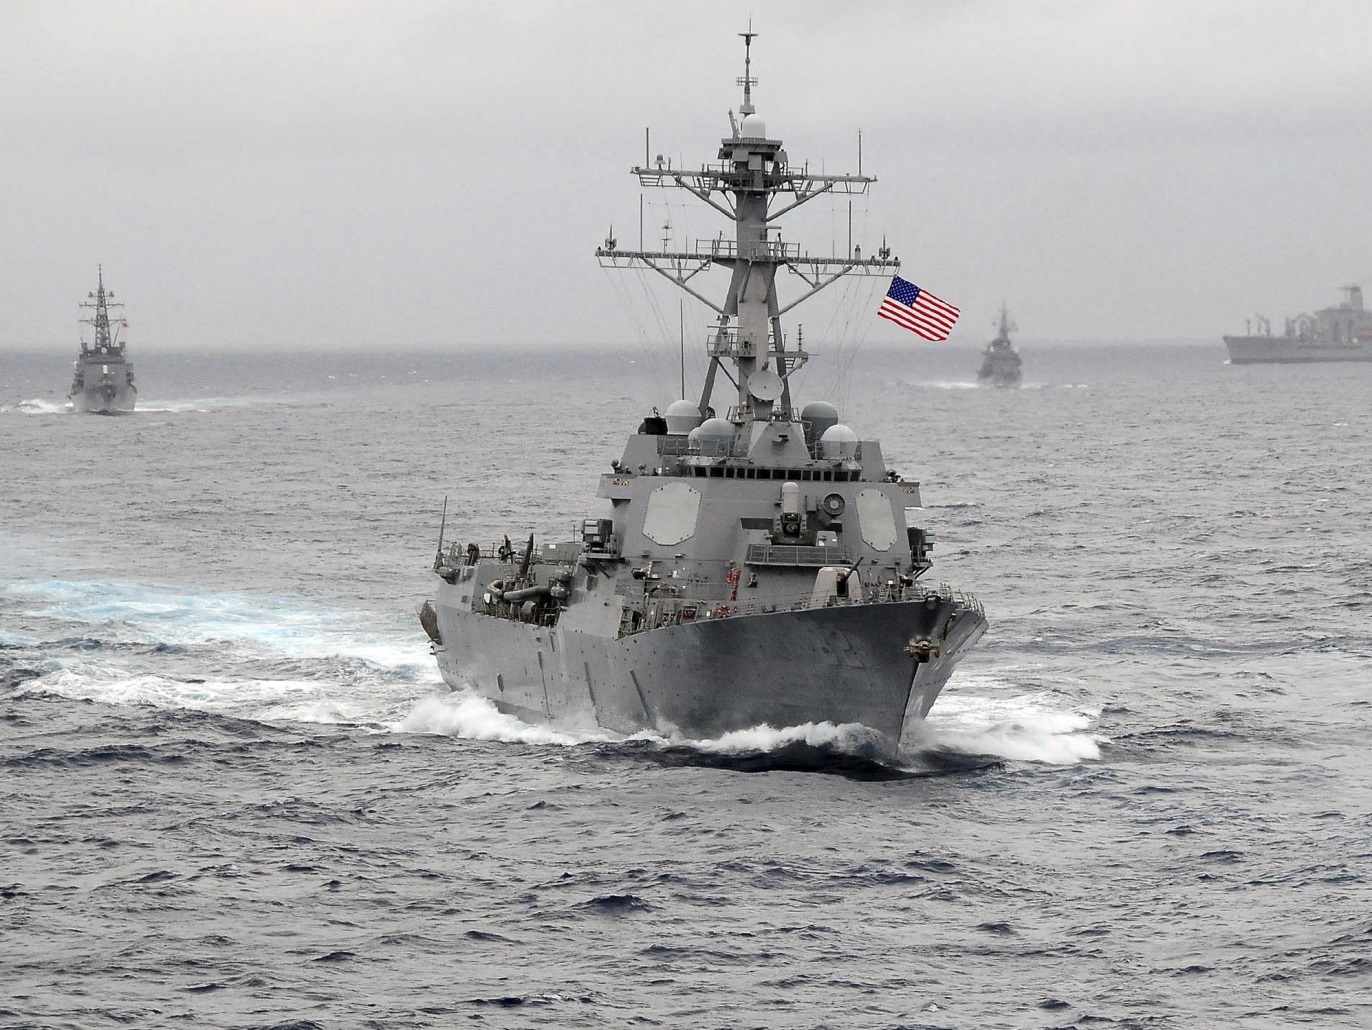 المدمرة الأميركية یو إس إس لاسن اتجهت مؤخرا إلى منطقة الكاريبي ضمن أربع سفن حربية أخرى (رويترز-أرشيف)